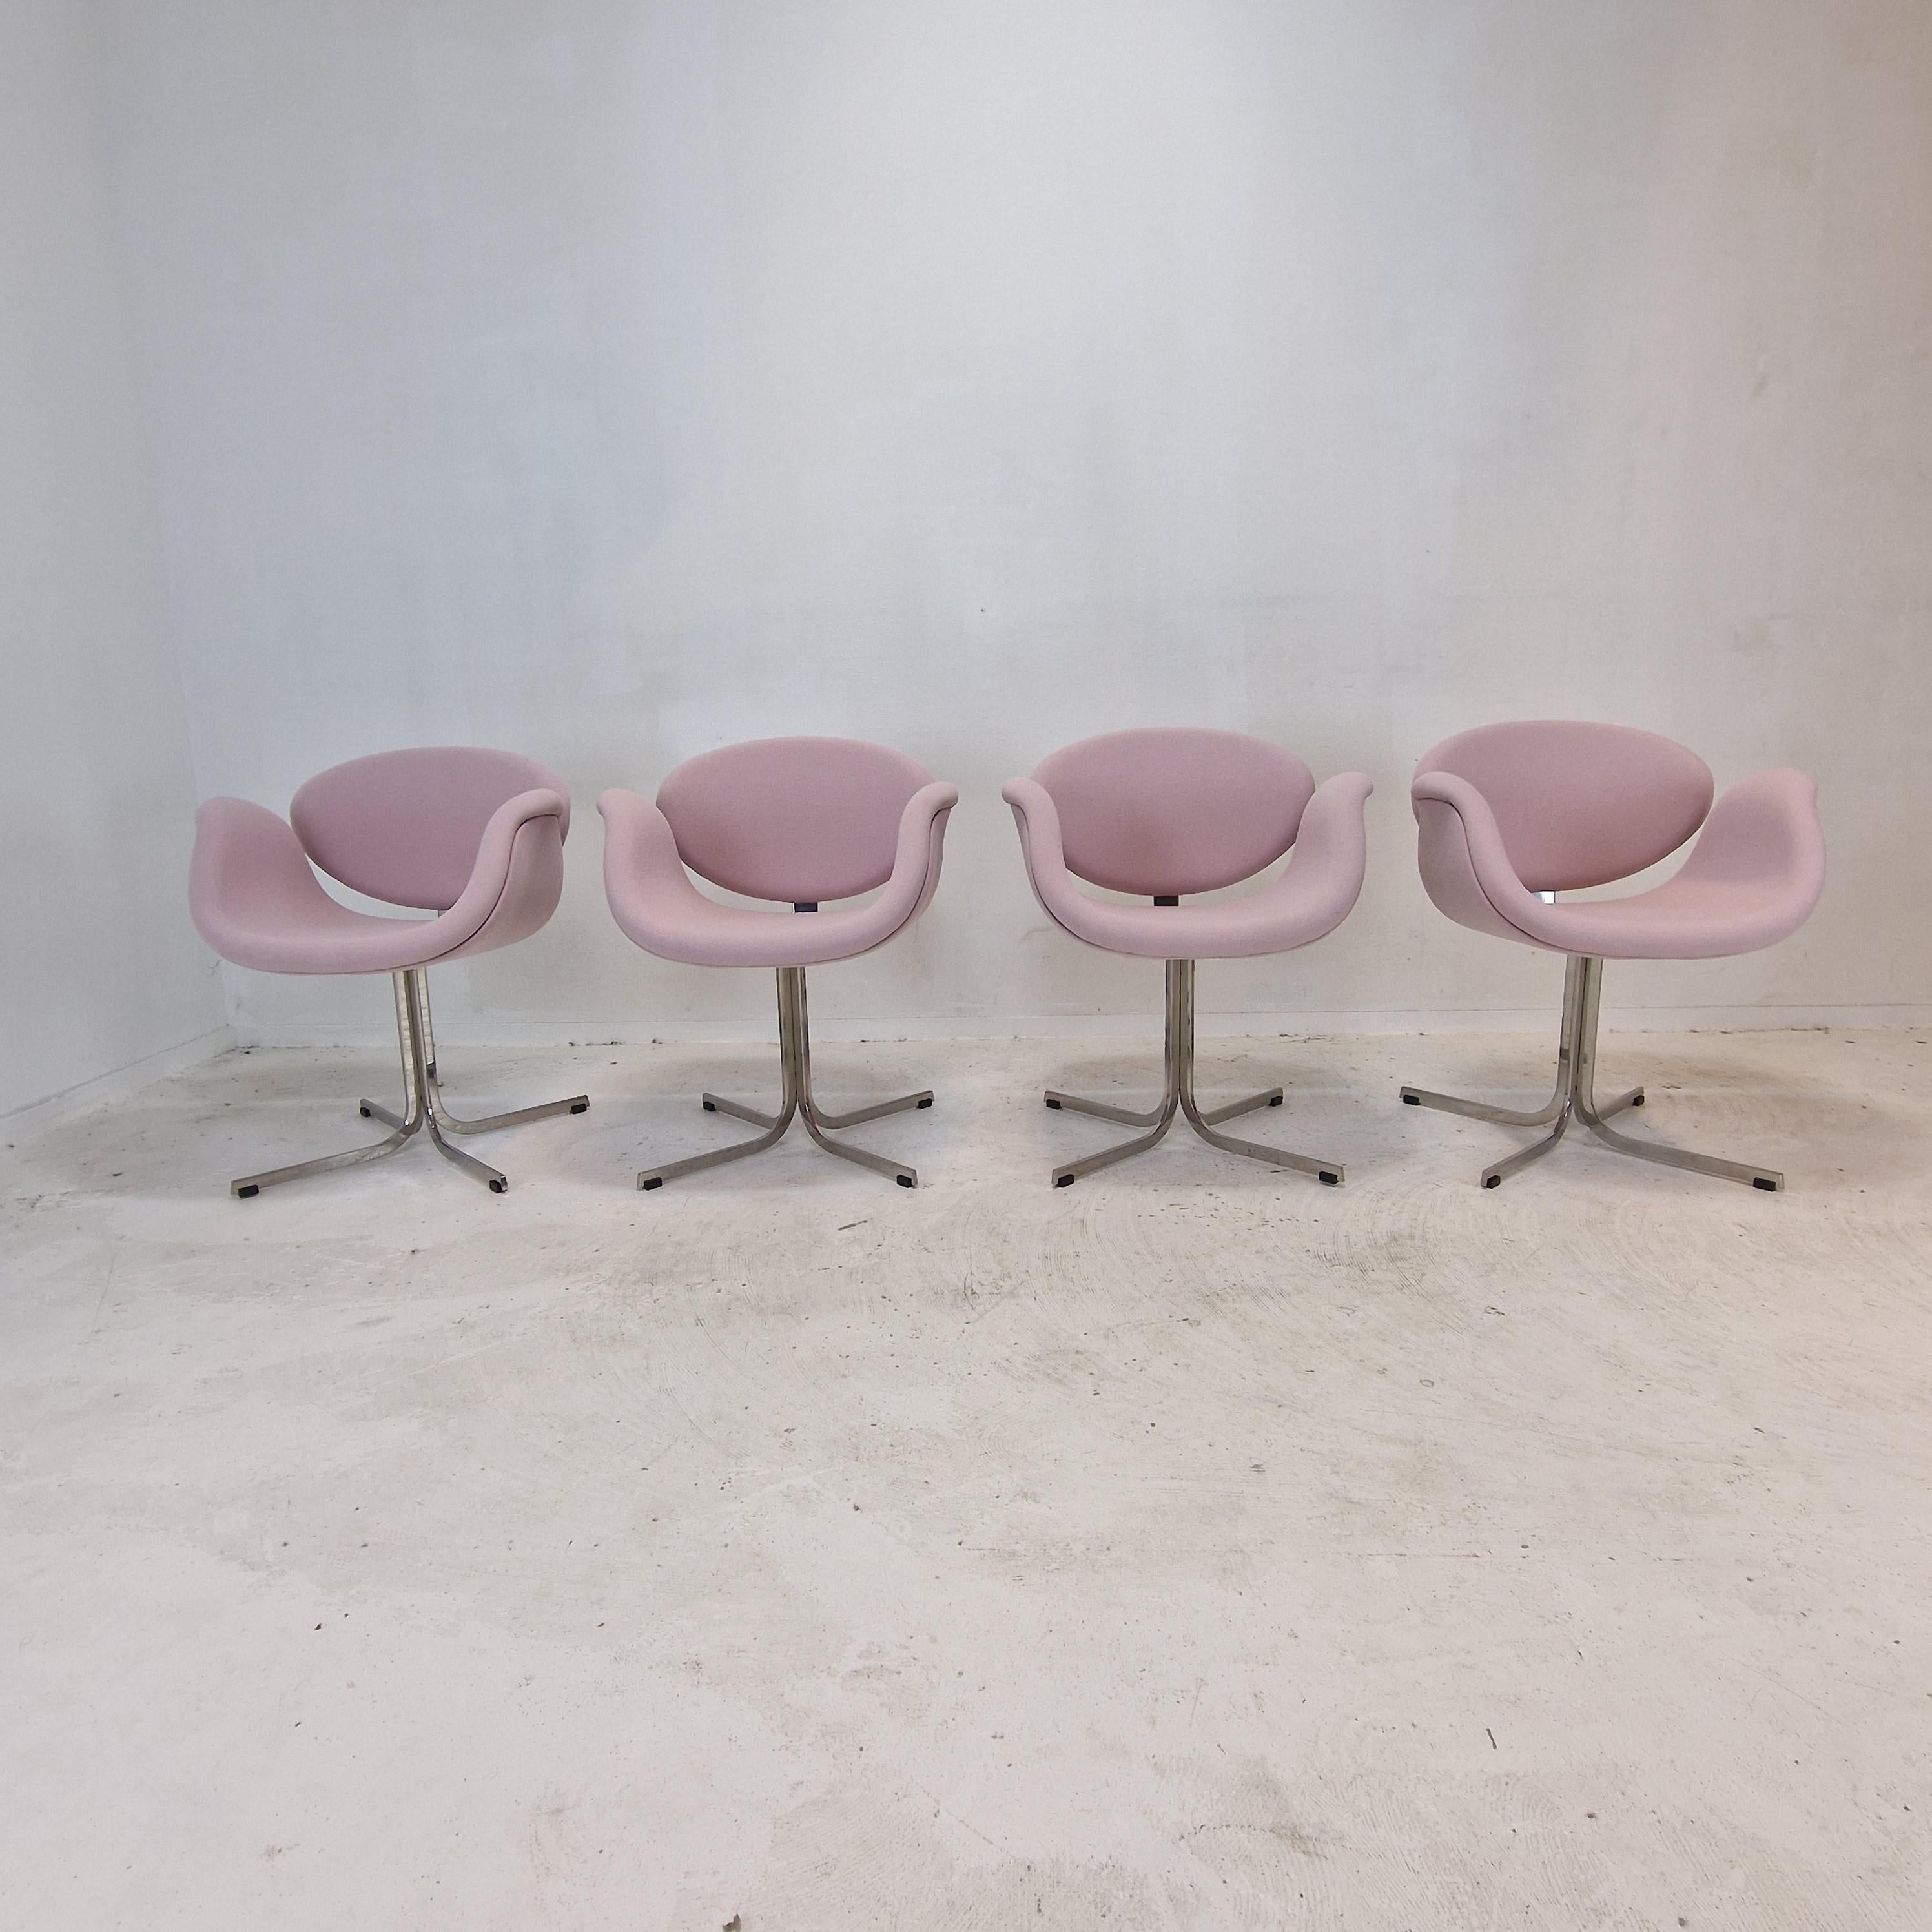 Satz von 4 Little Tulip Sesseln.
Diese hübschen und sehr bequemen Sessel wurden von dem berühmten französischen Designer Pierre Paulin in den 60er Jahren entworfen. 
Sie werden von Artifort hergestellt.

Sehr solider Metallkreuzsockel mit einem